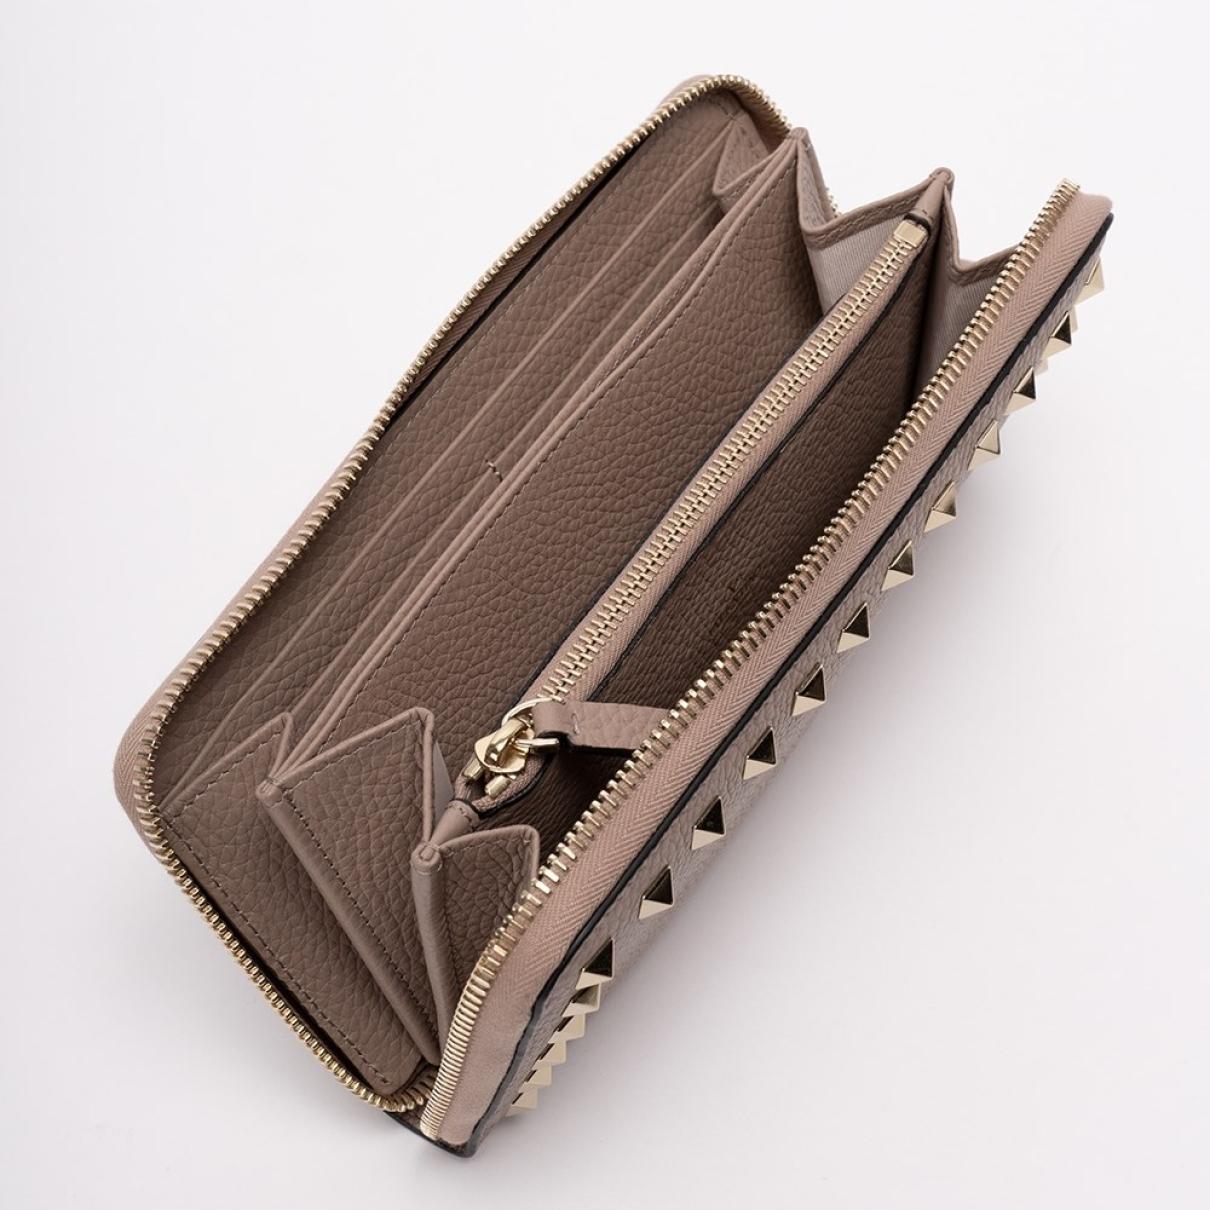 Rockstud leather wallet - 3